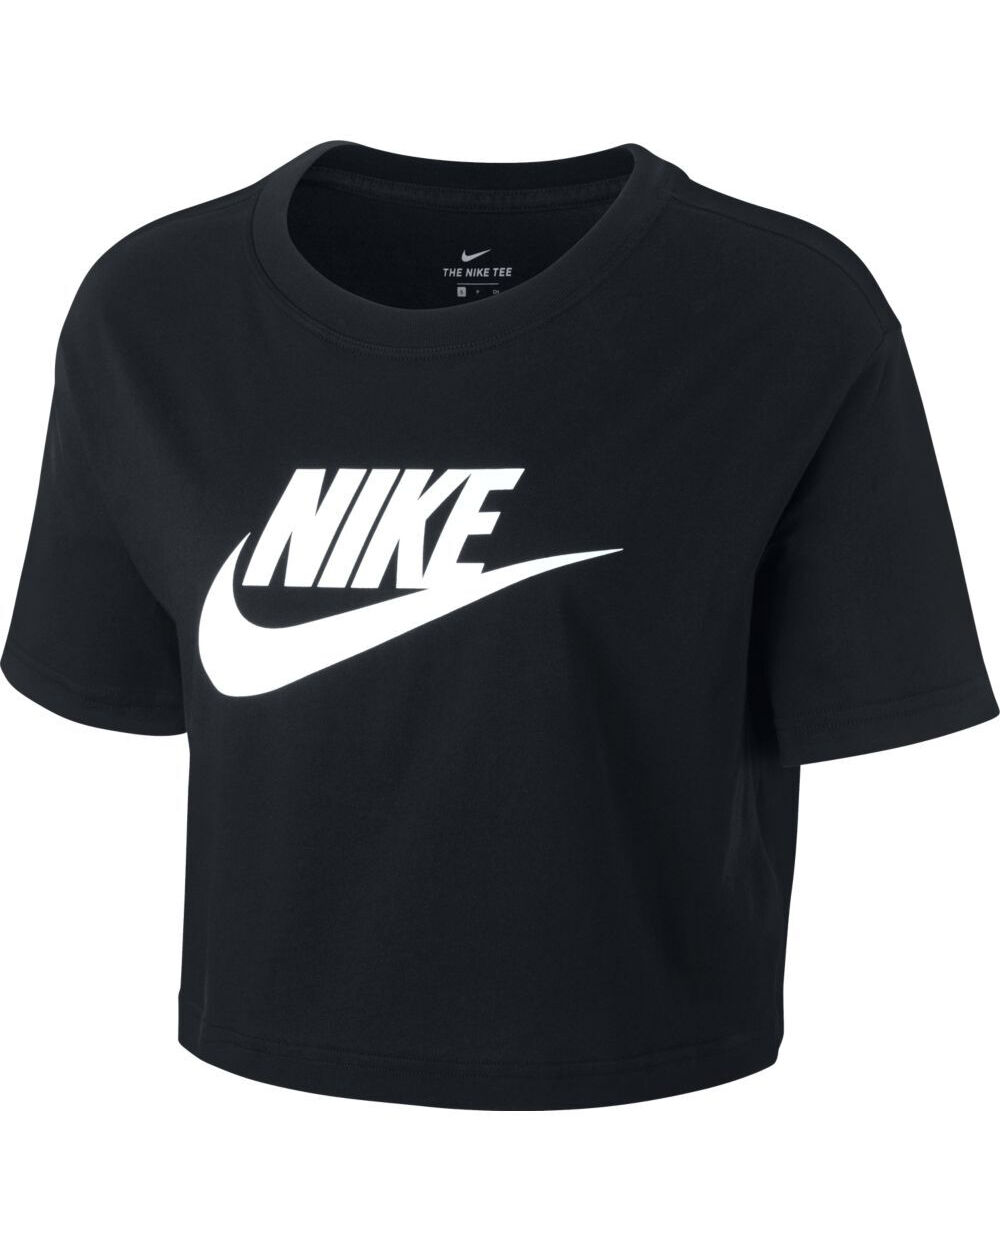 Camiseta Nike Sportswear Negro para Mujeres - BV6175-010